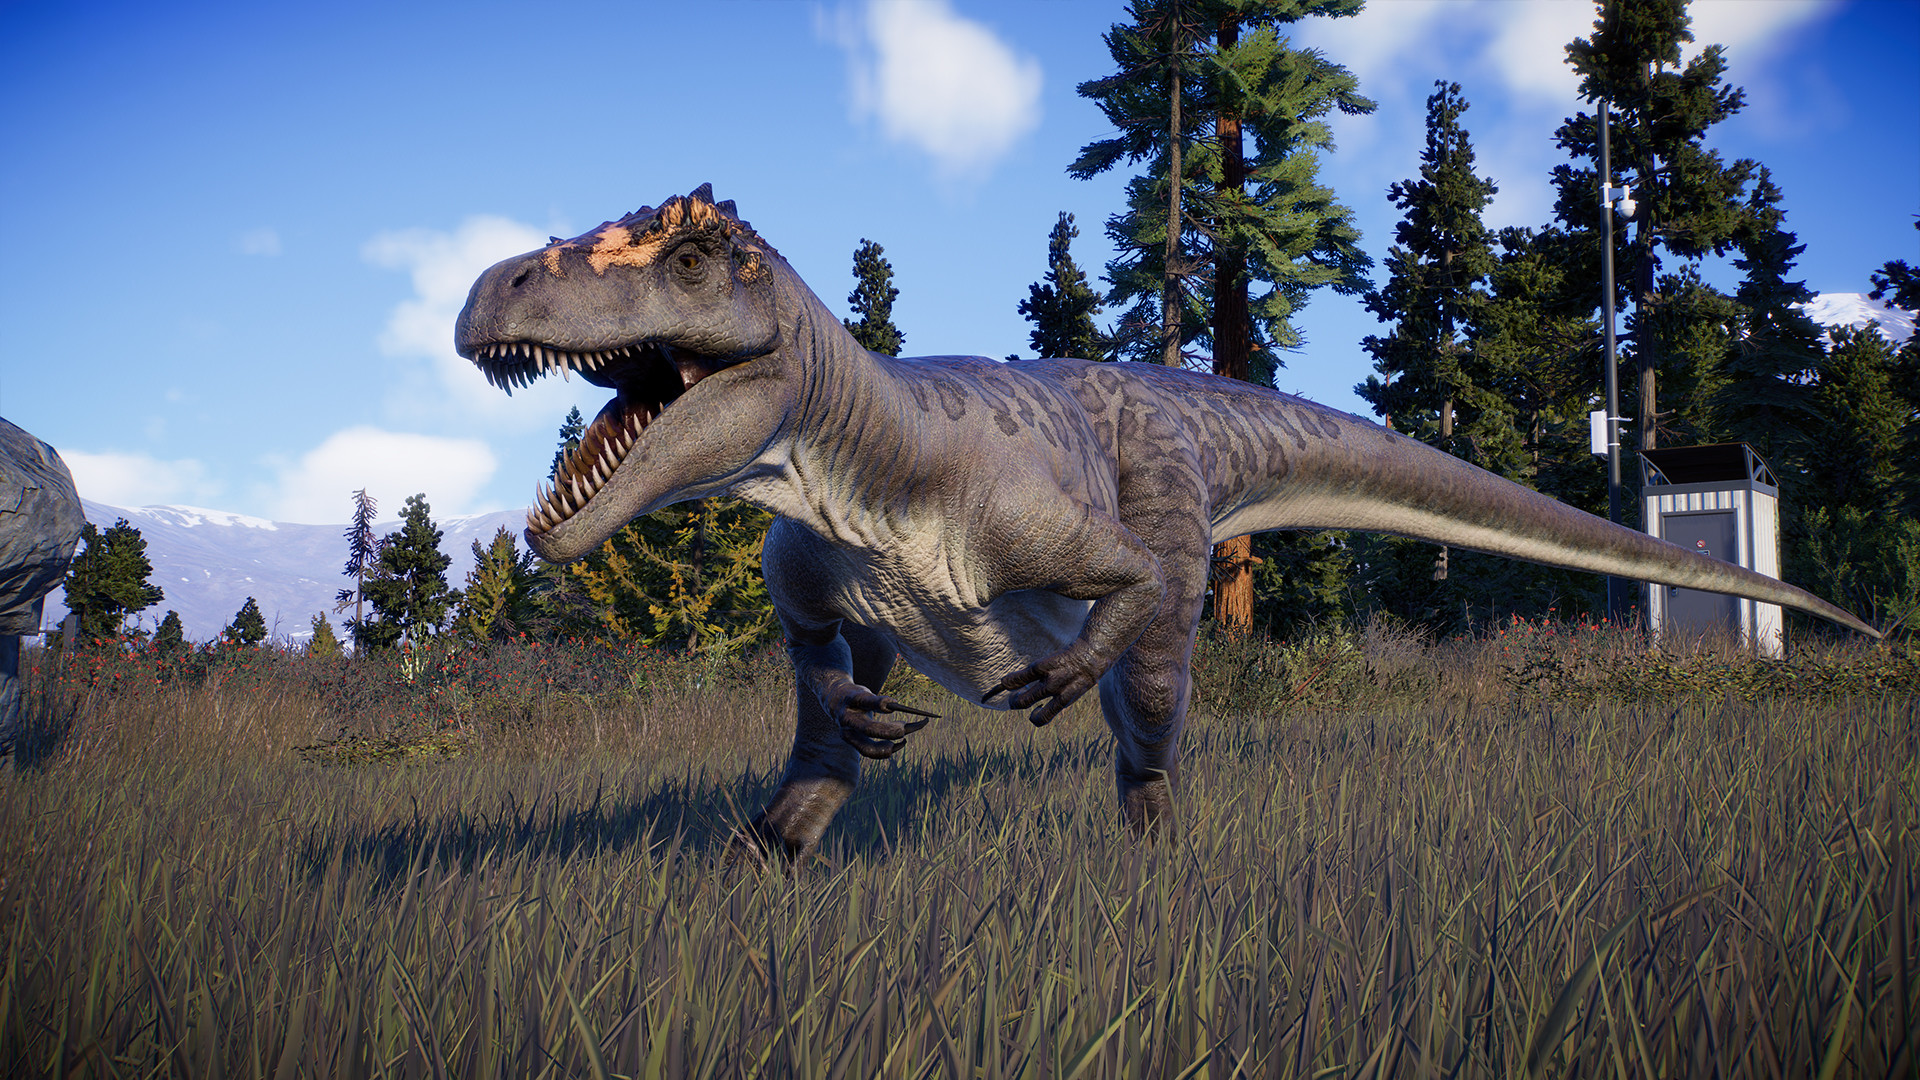 Jurassic World Evolution 2 - Deluxe Upgrade Pack DLC Steam CD Key